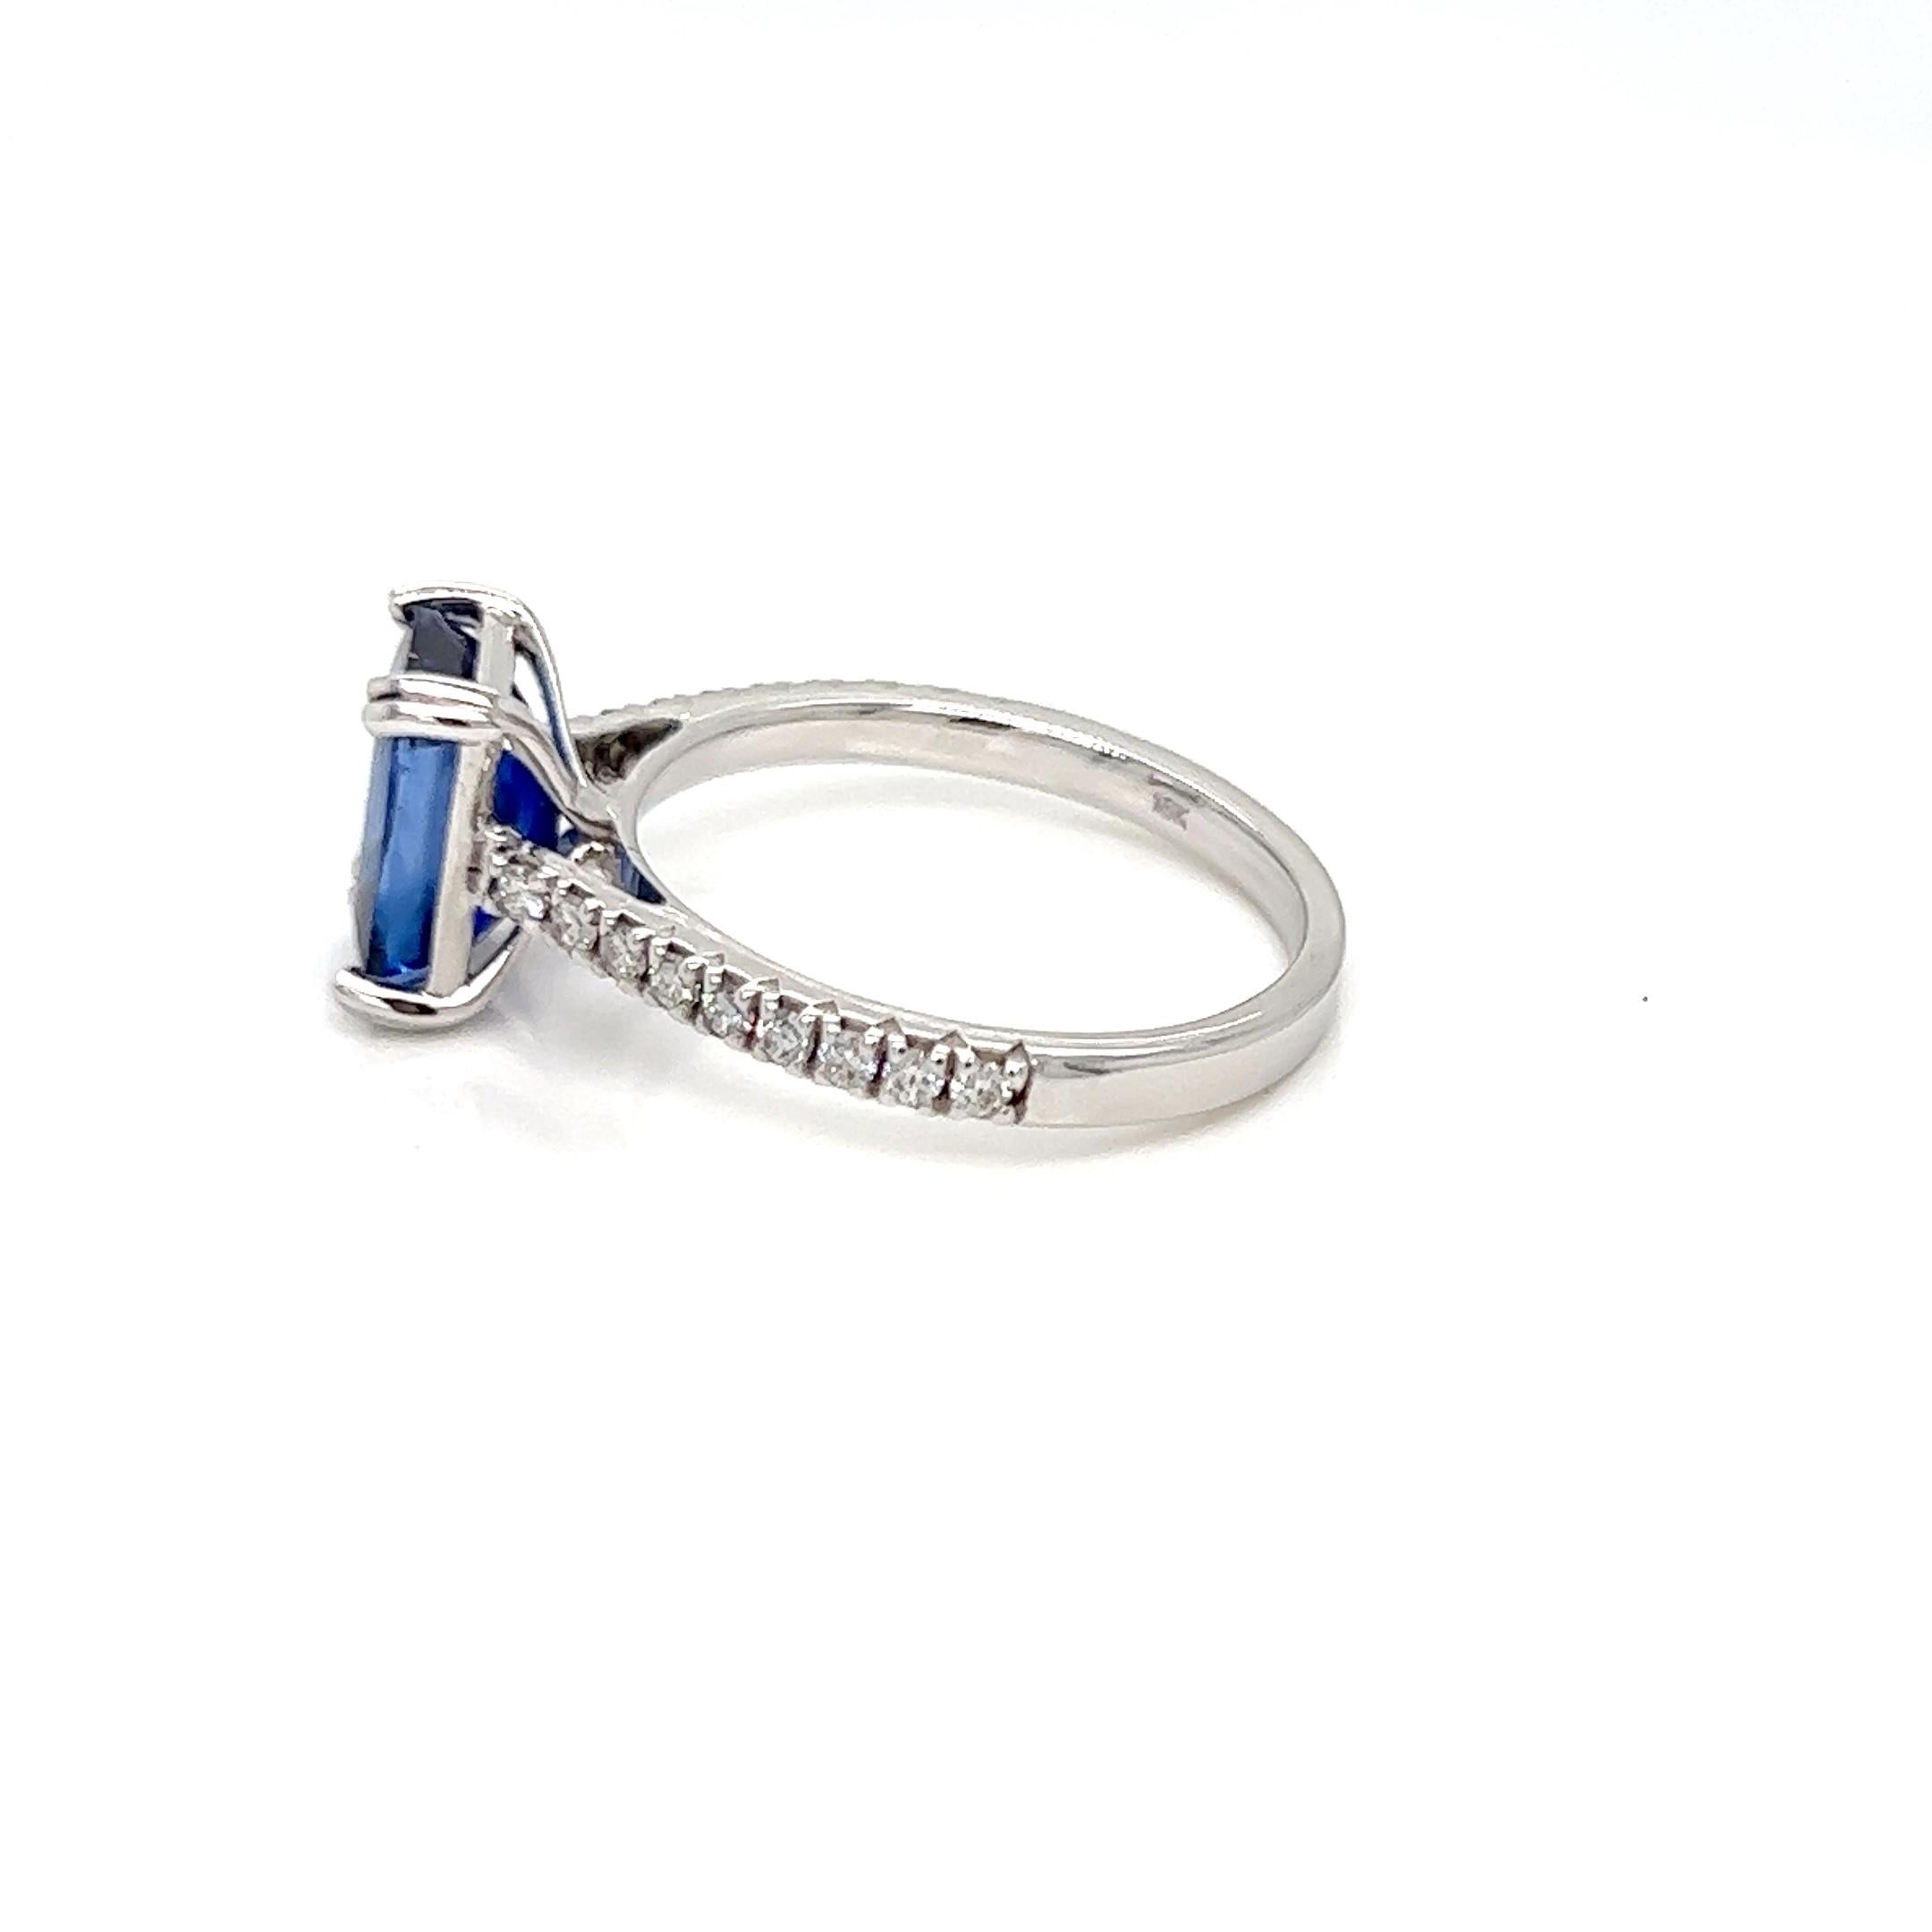 Nous vous présentons 2.75 Carats Emerald Cut Solitaire Sapphire Ring with diamonds made in 14k white gold in the heart of New York City. Cette bague est composée d'un saphir sri lankais de taille émeraude qui n'est pas de qualité commerciale, ce qui